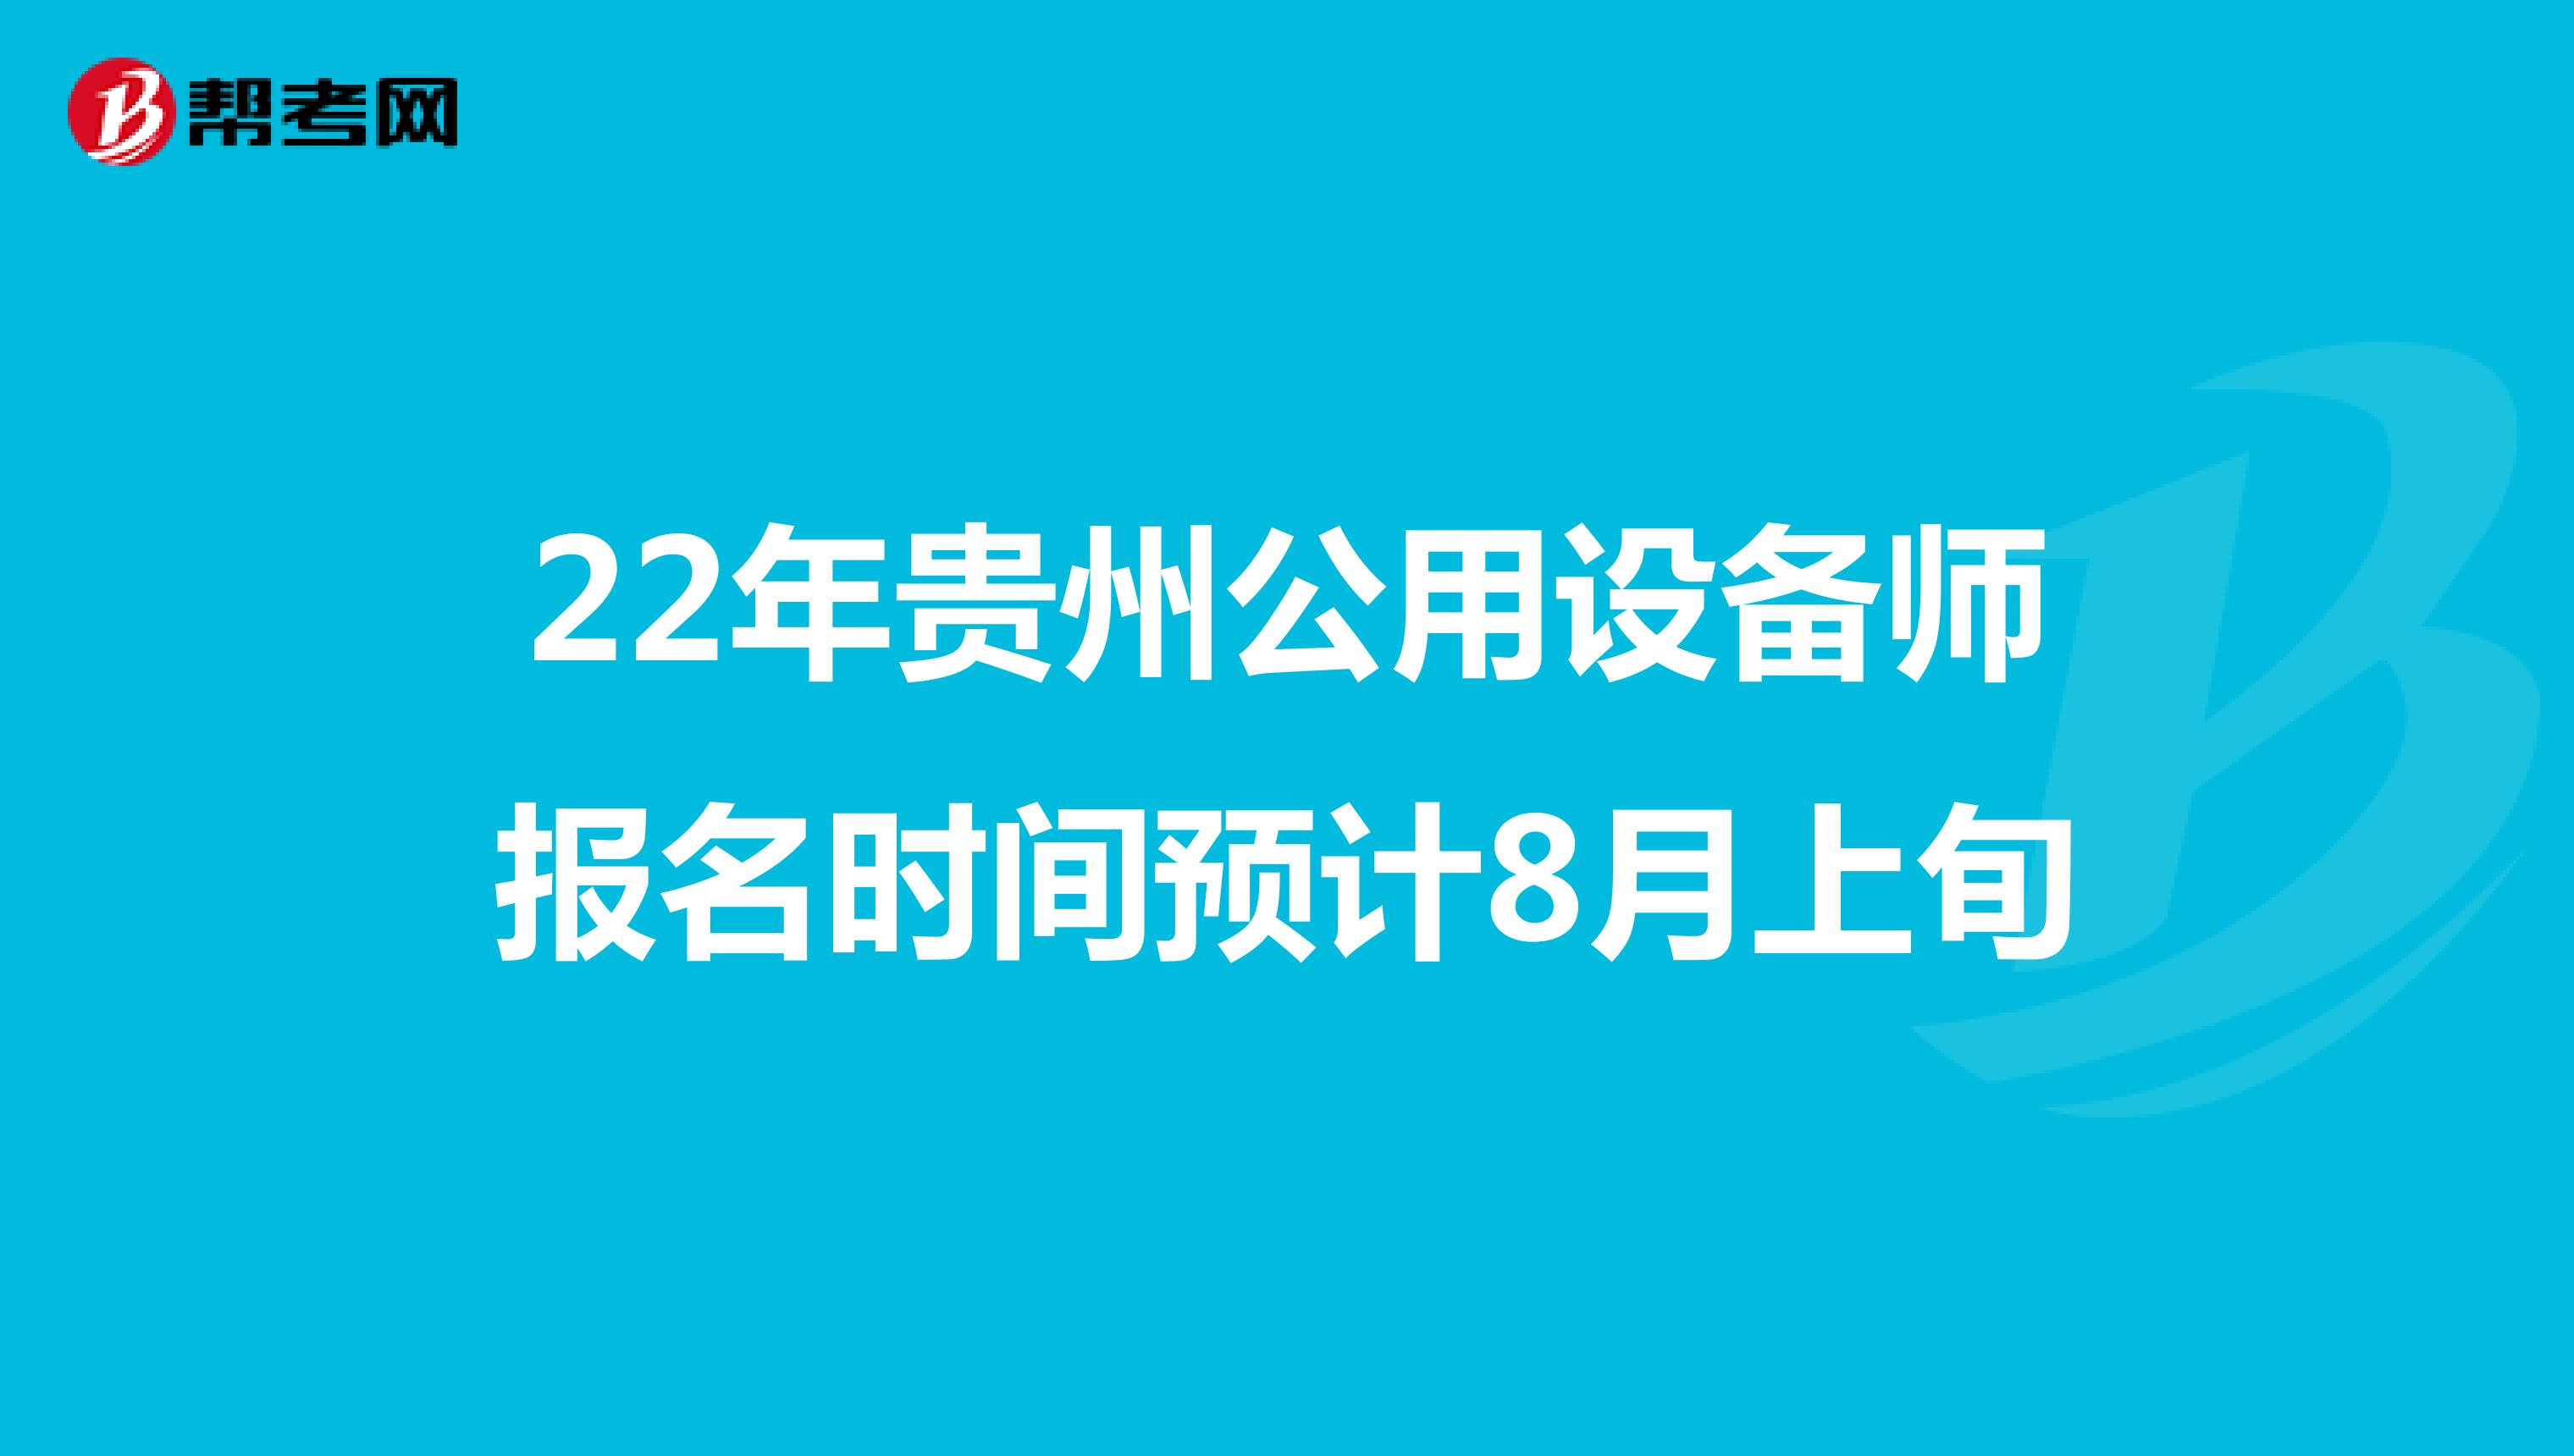 22年贵州公用设备师报名时间预计8月上旬